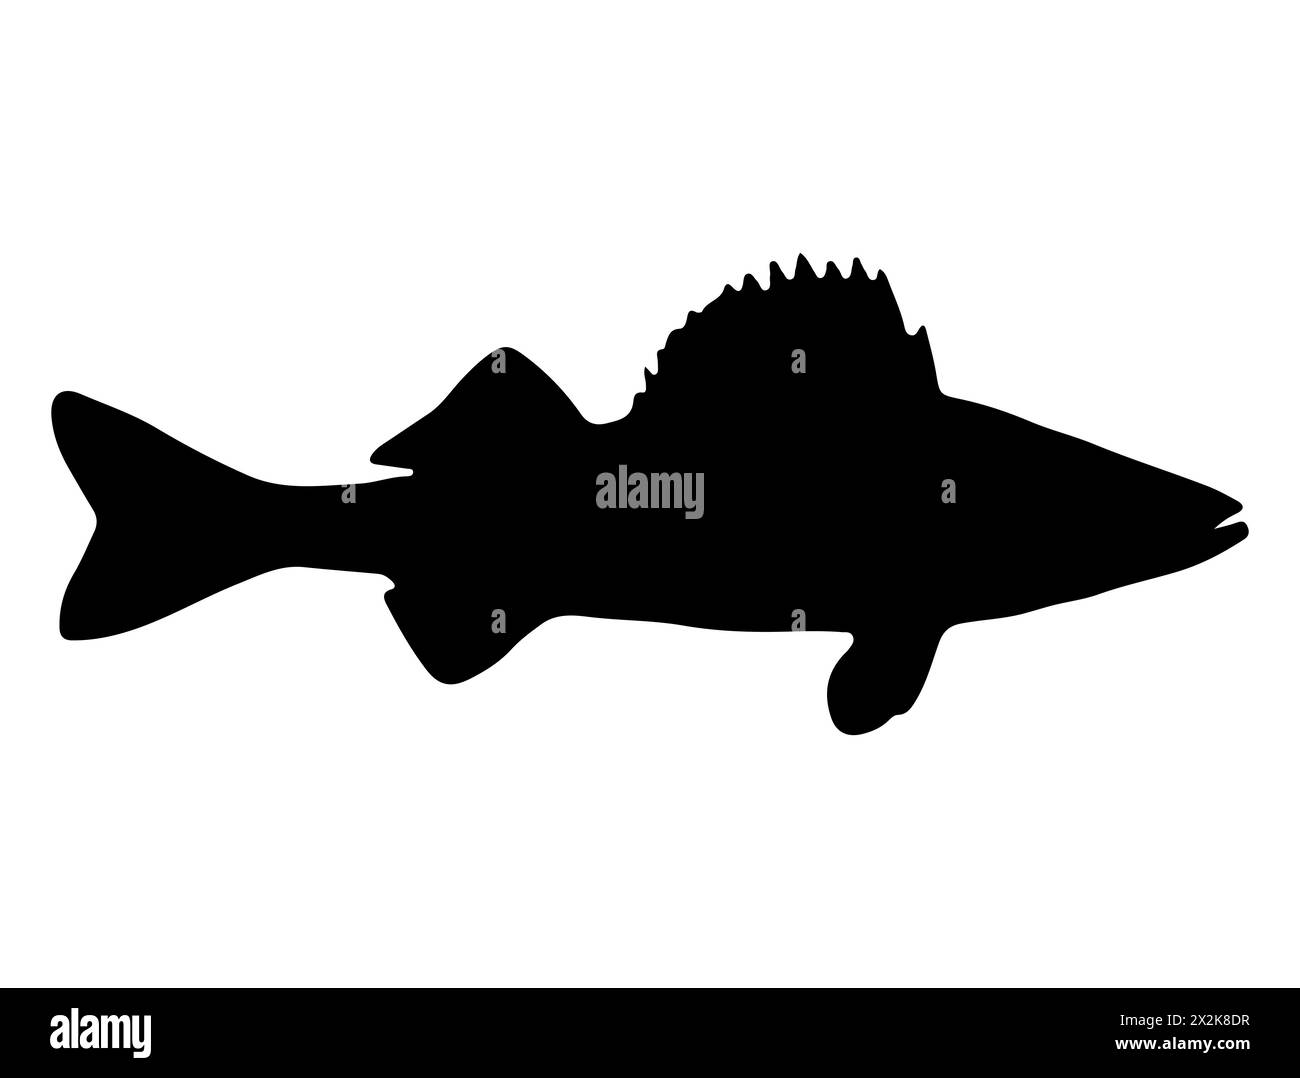 Walleye fish silhouette vector art Stock Vector